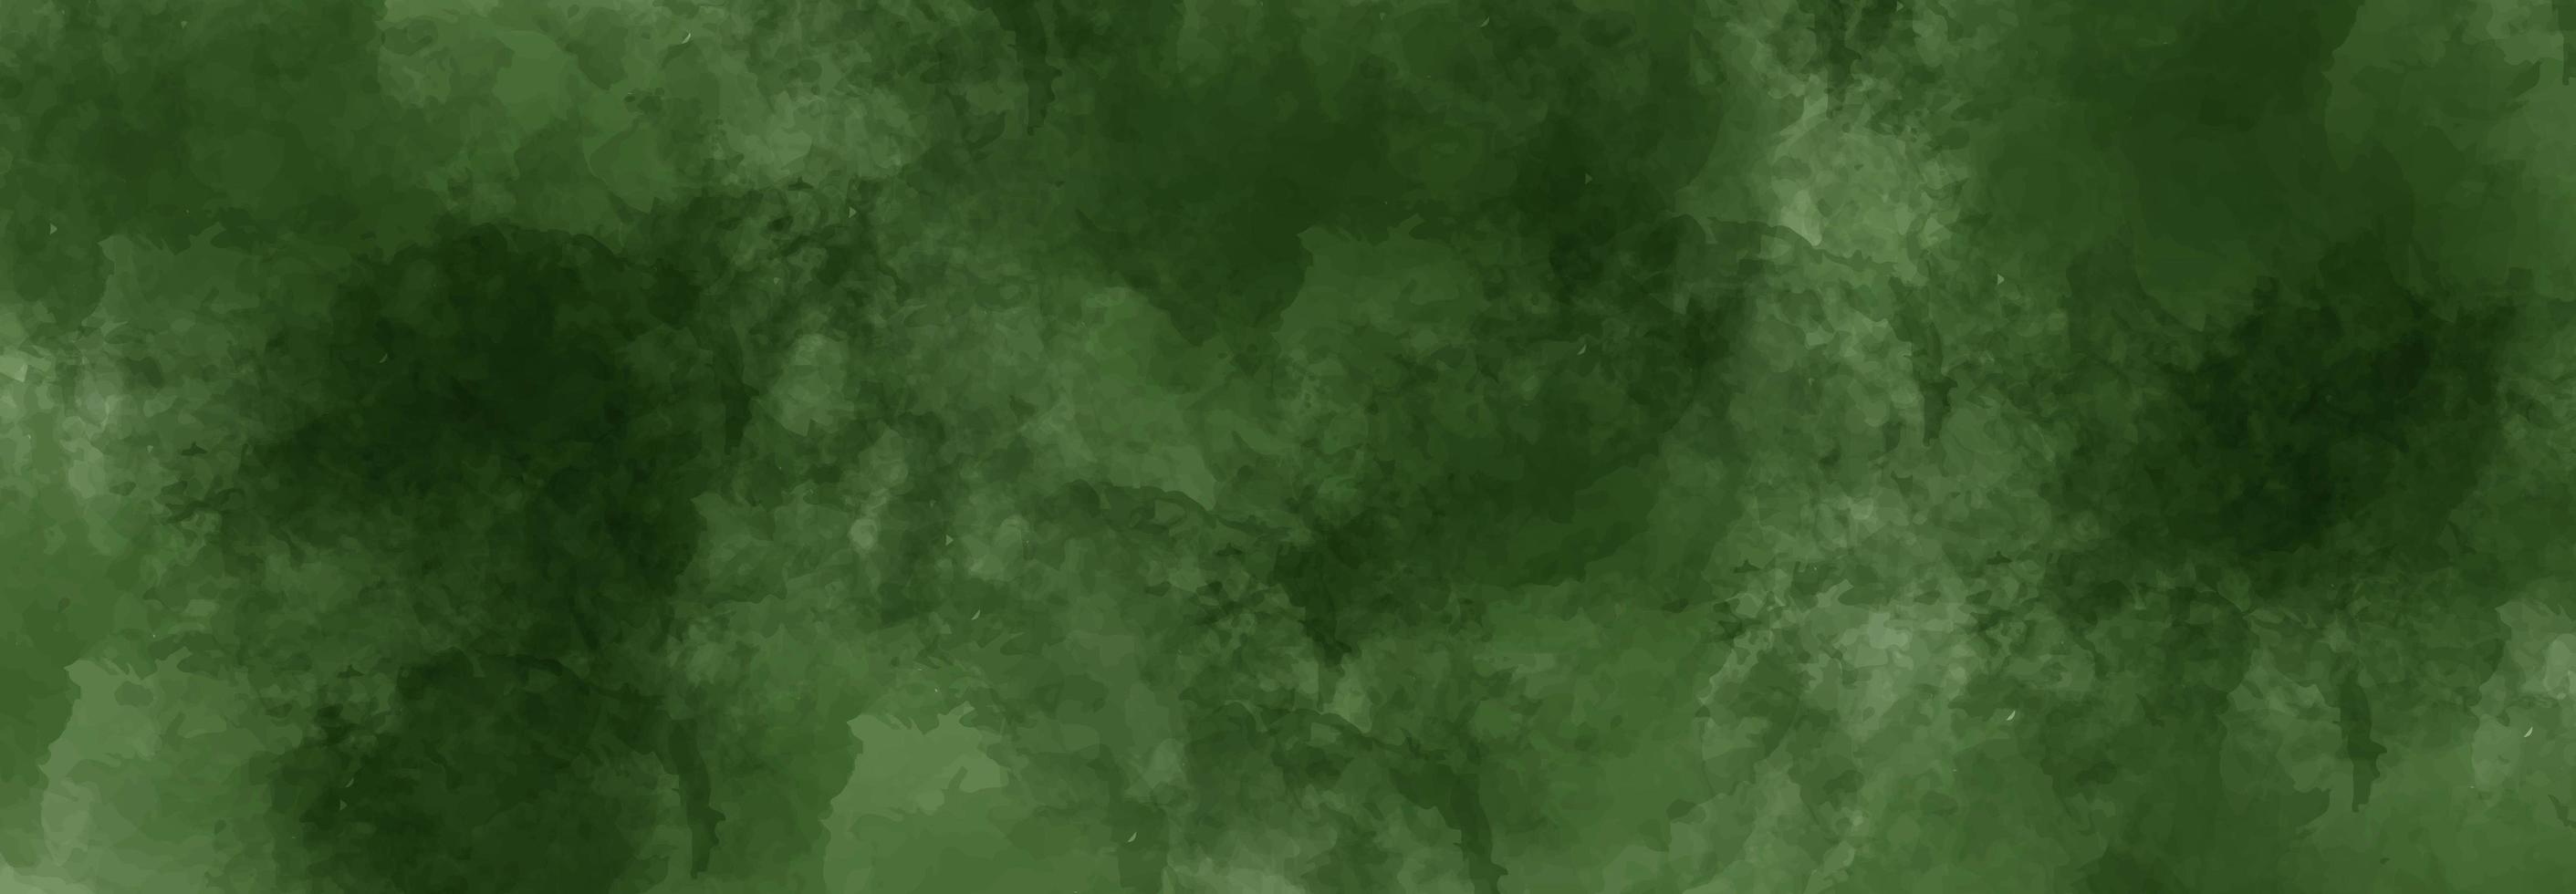 fundo abstrato aquarela verde foto